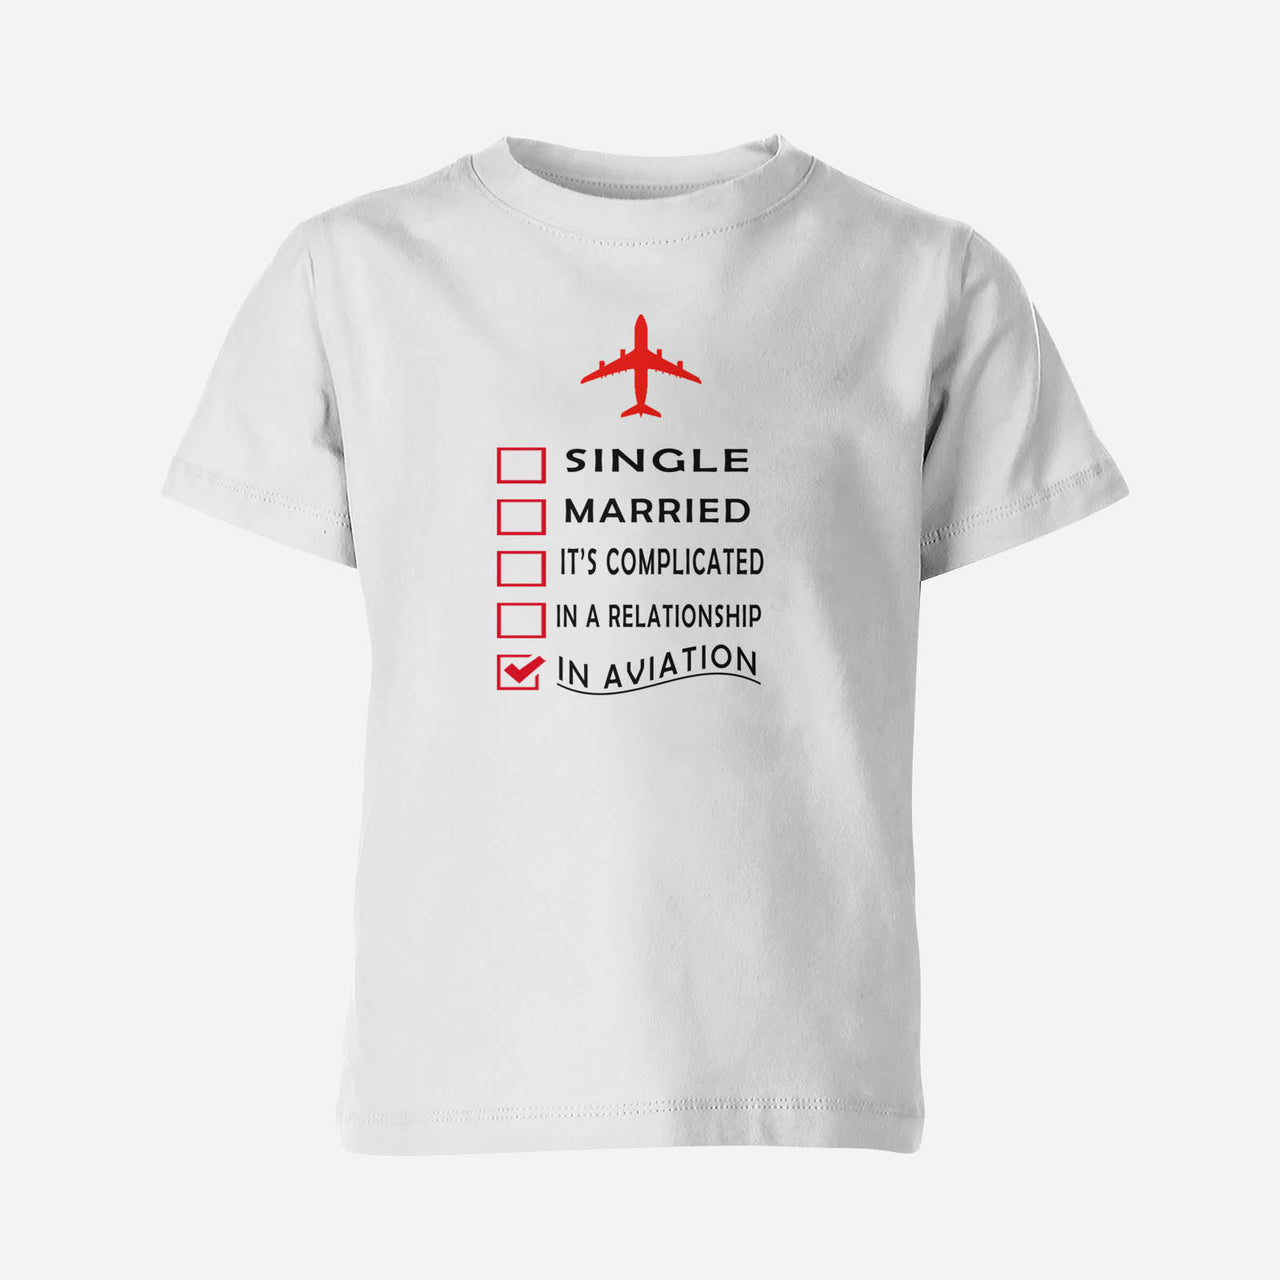 In Aviation Designed Children T-Shirts